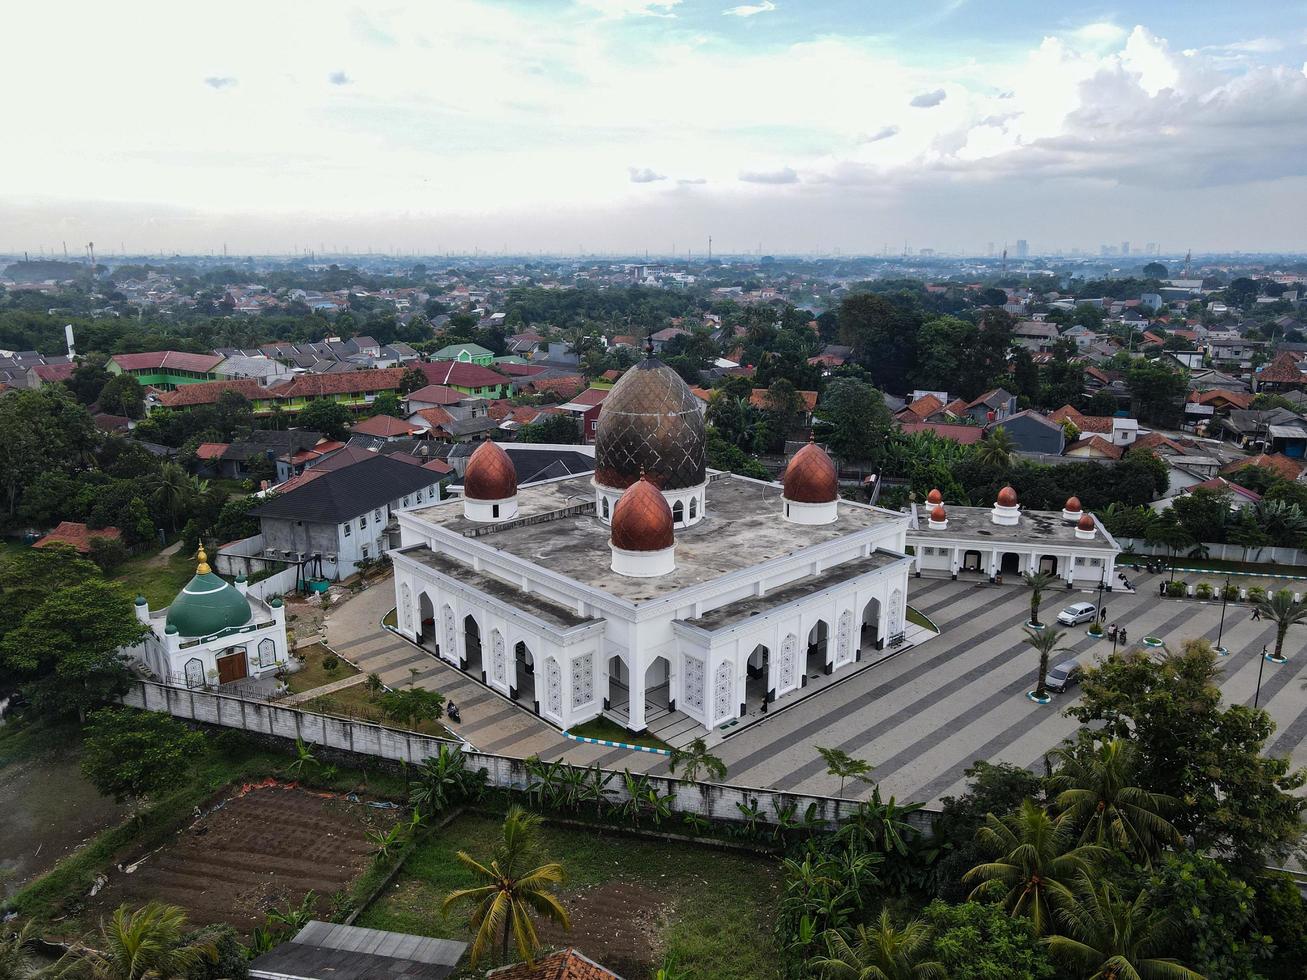 depok, indonésia 2021 - panorama da mesquita do centro de nurul mustofa, vista da maior mesquita de depok foto